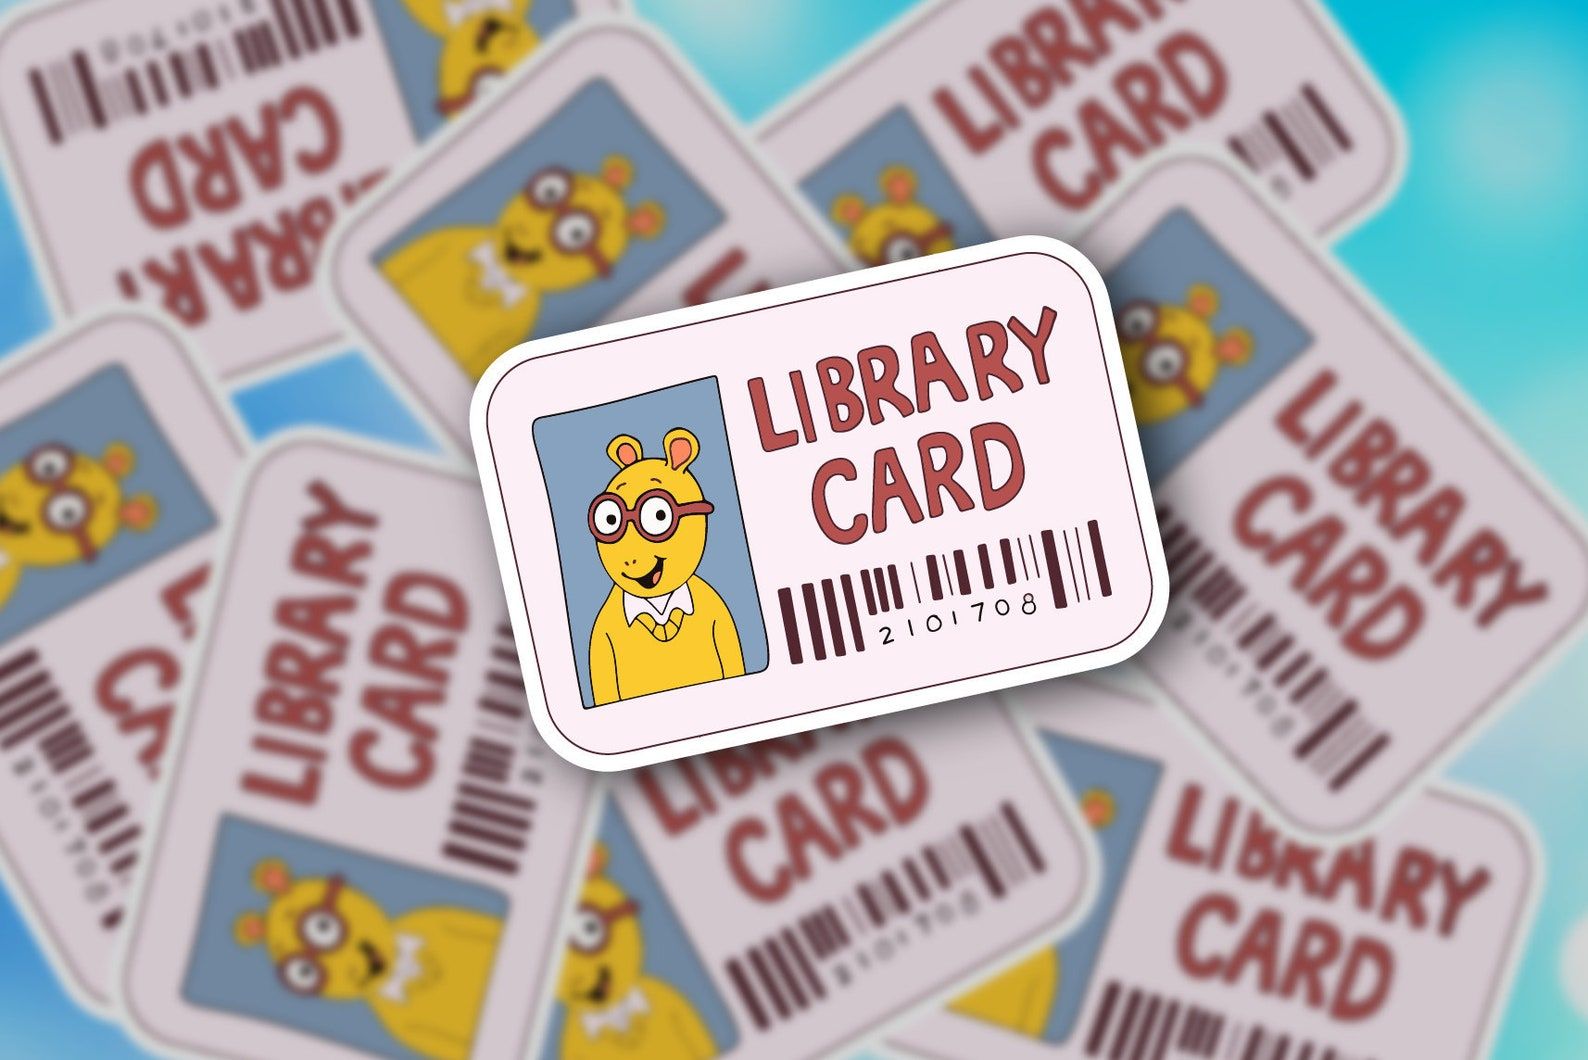 Bibliotekos formos lipduko paveikslėlis.  Jis perskaito bibliotekos kortelę su žemiau esančiu brūkšniniu kodu, o kortelės paveikslėlis yra Artūro. 